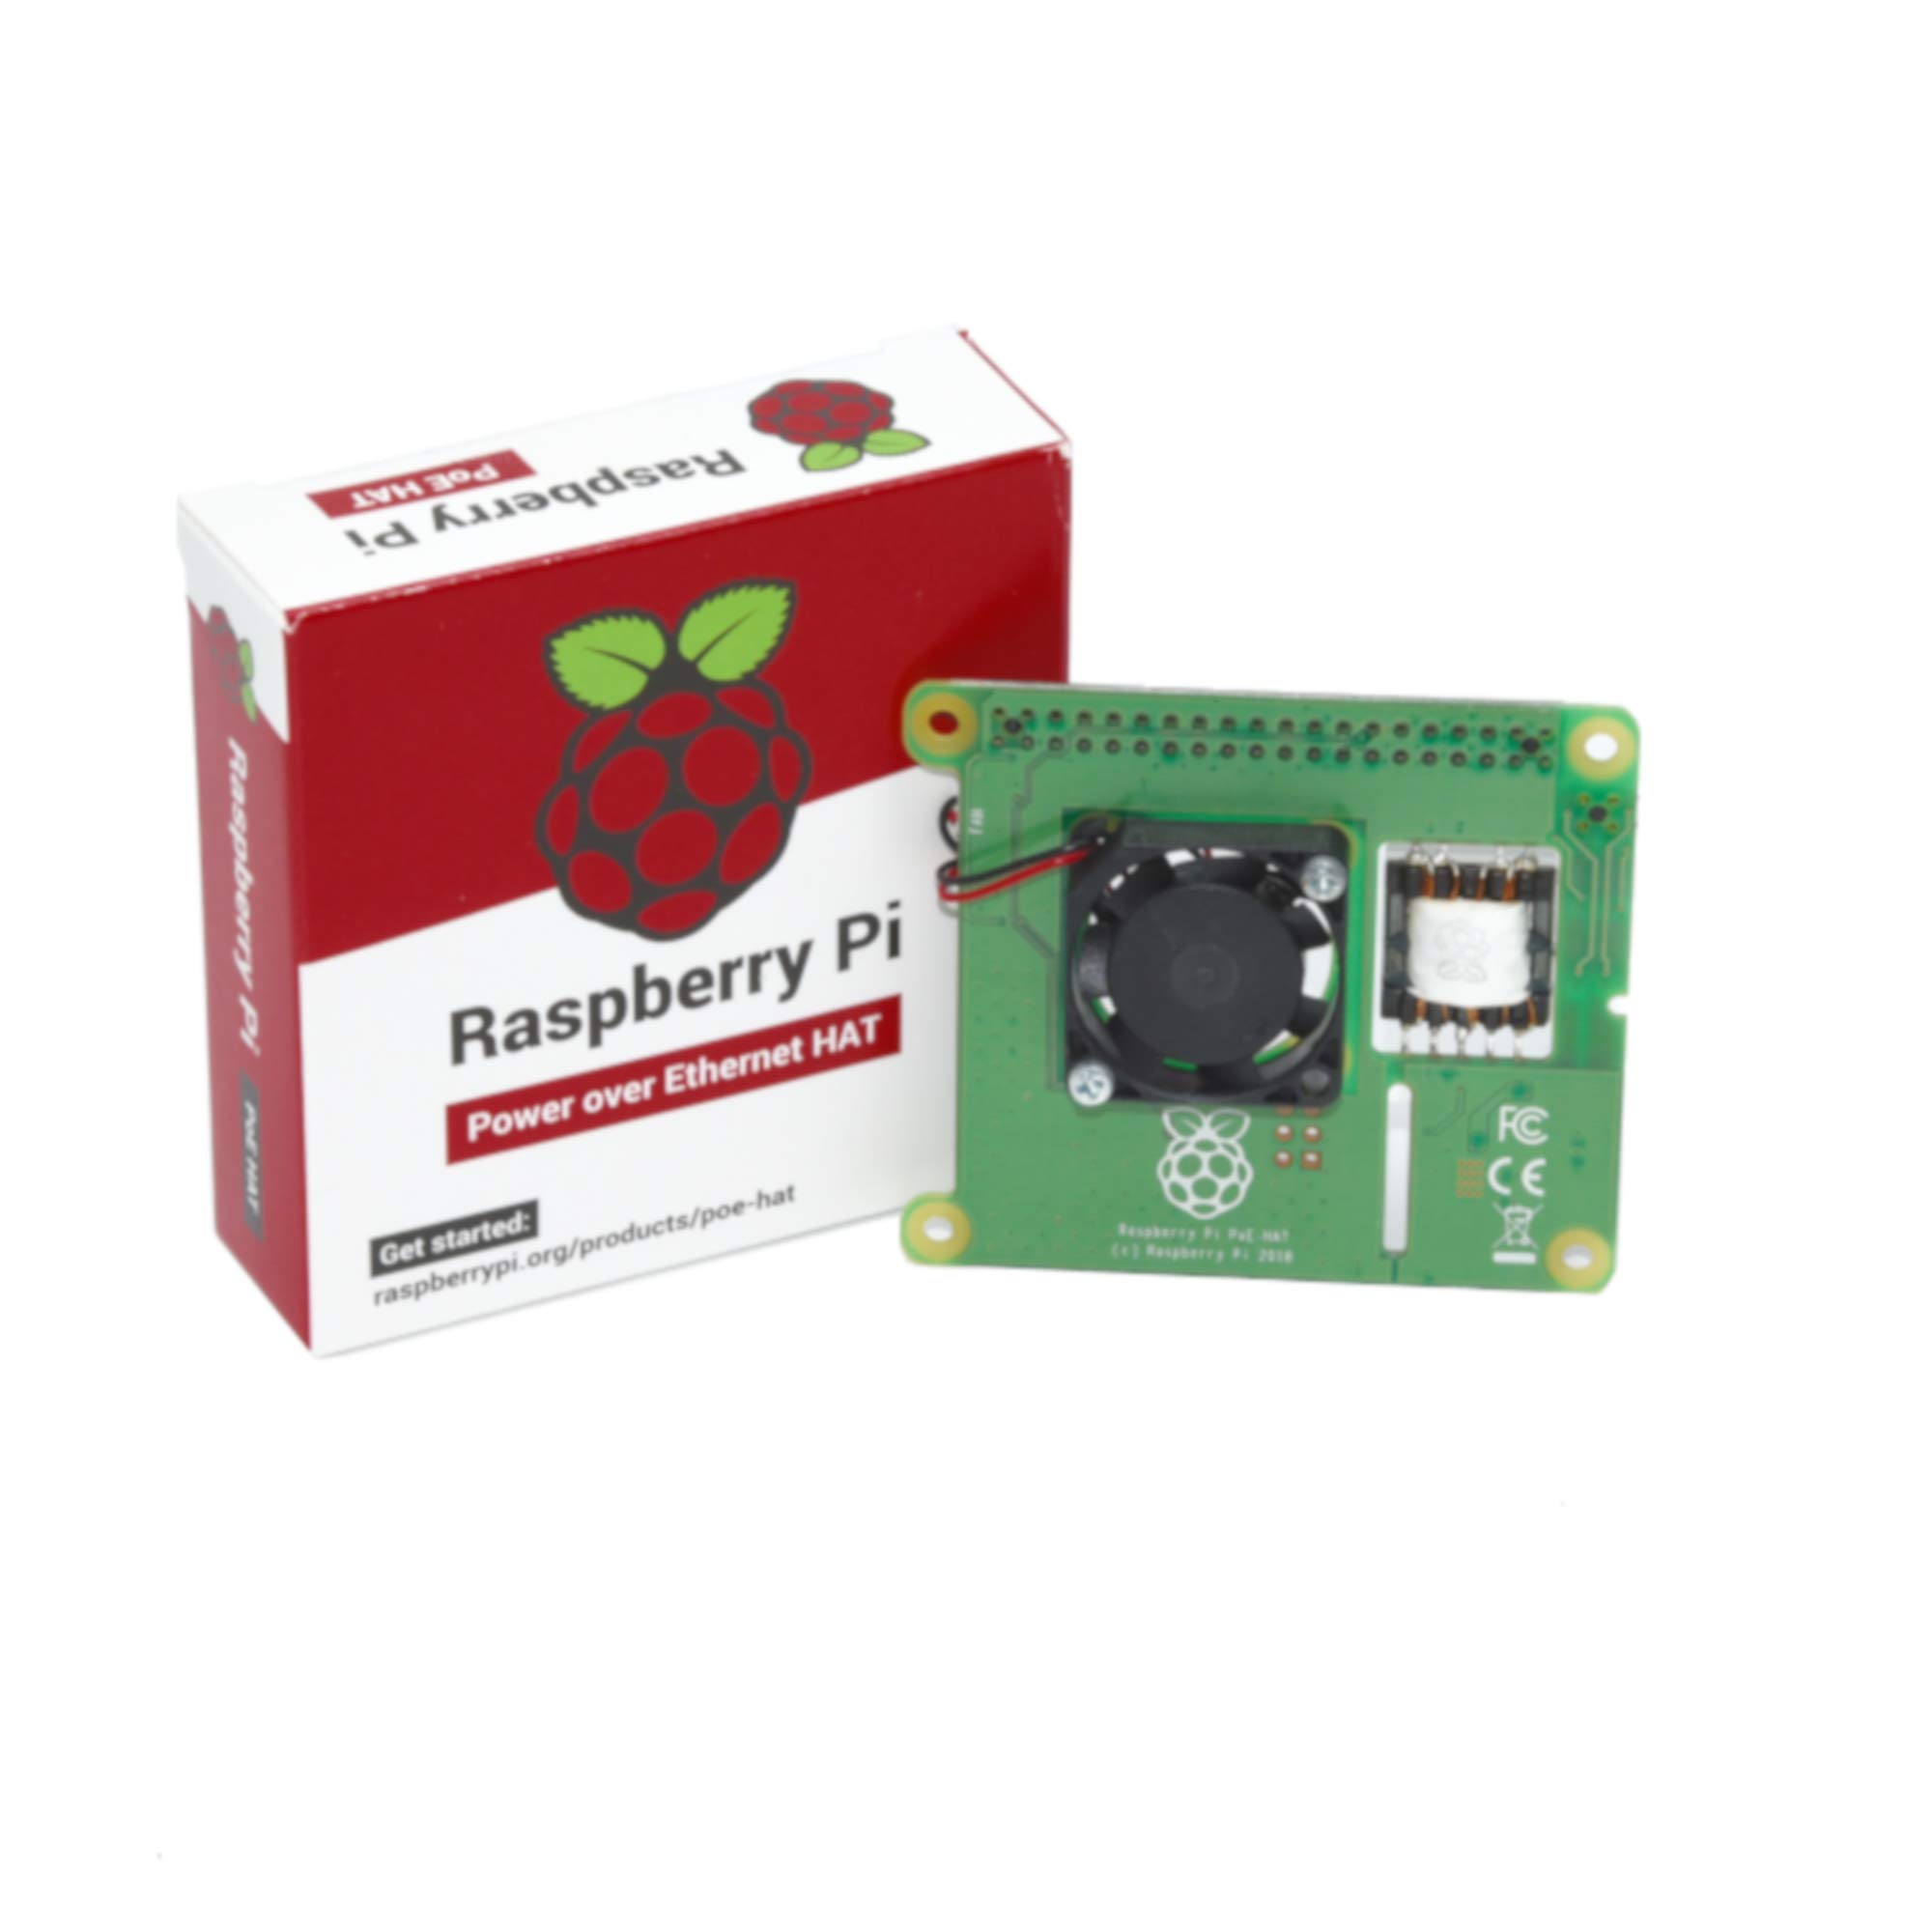 Raspberry Erweiterungsboard POE für 3B+, rb-poehead2